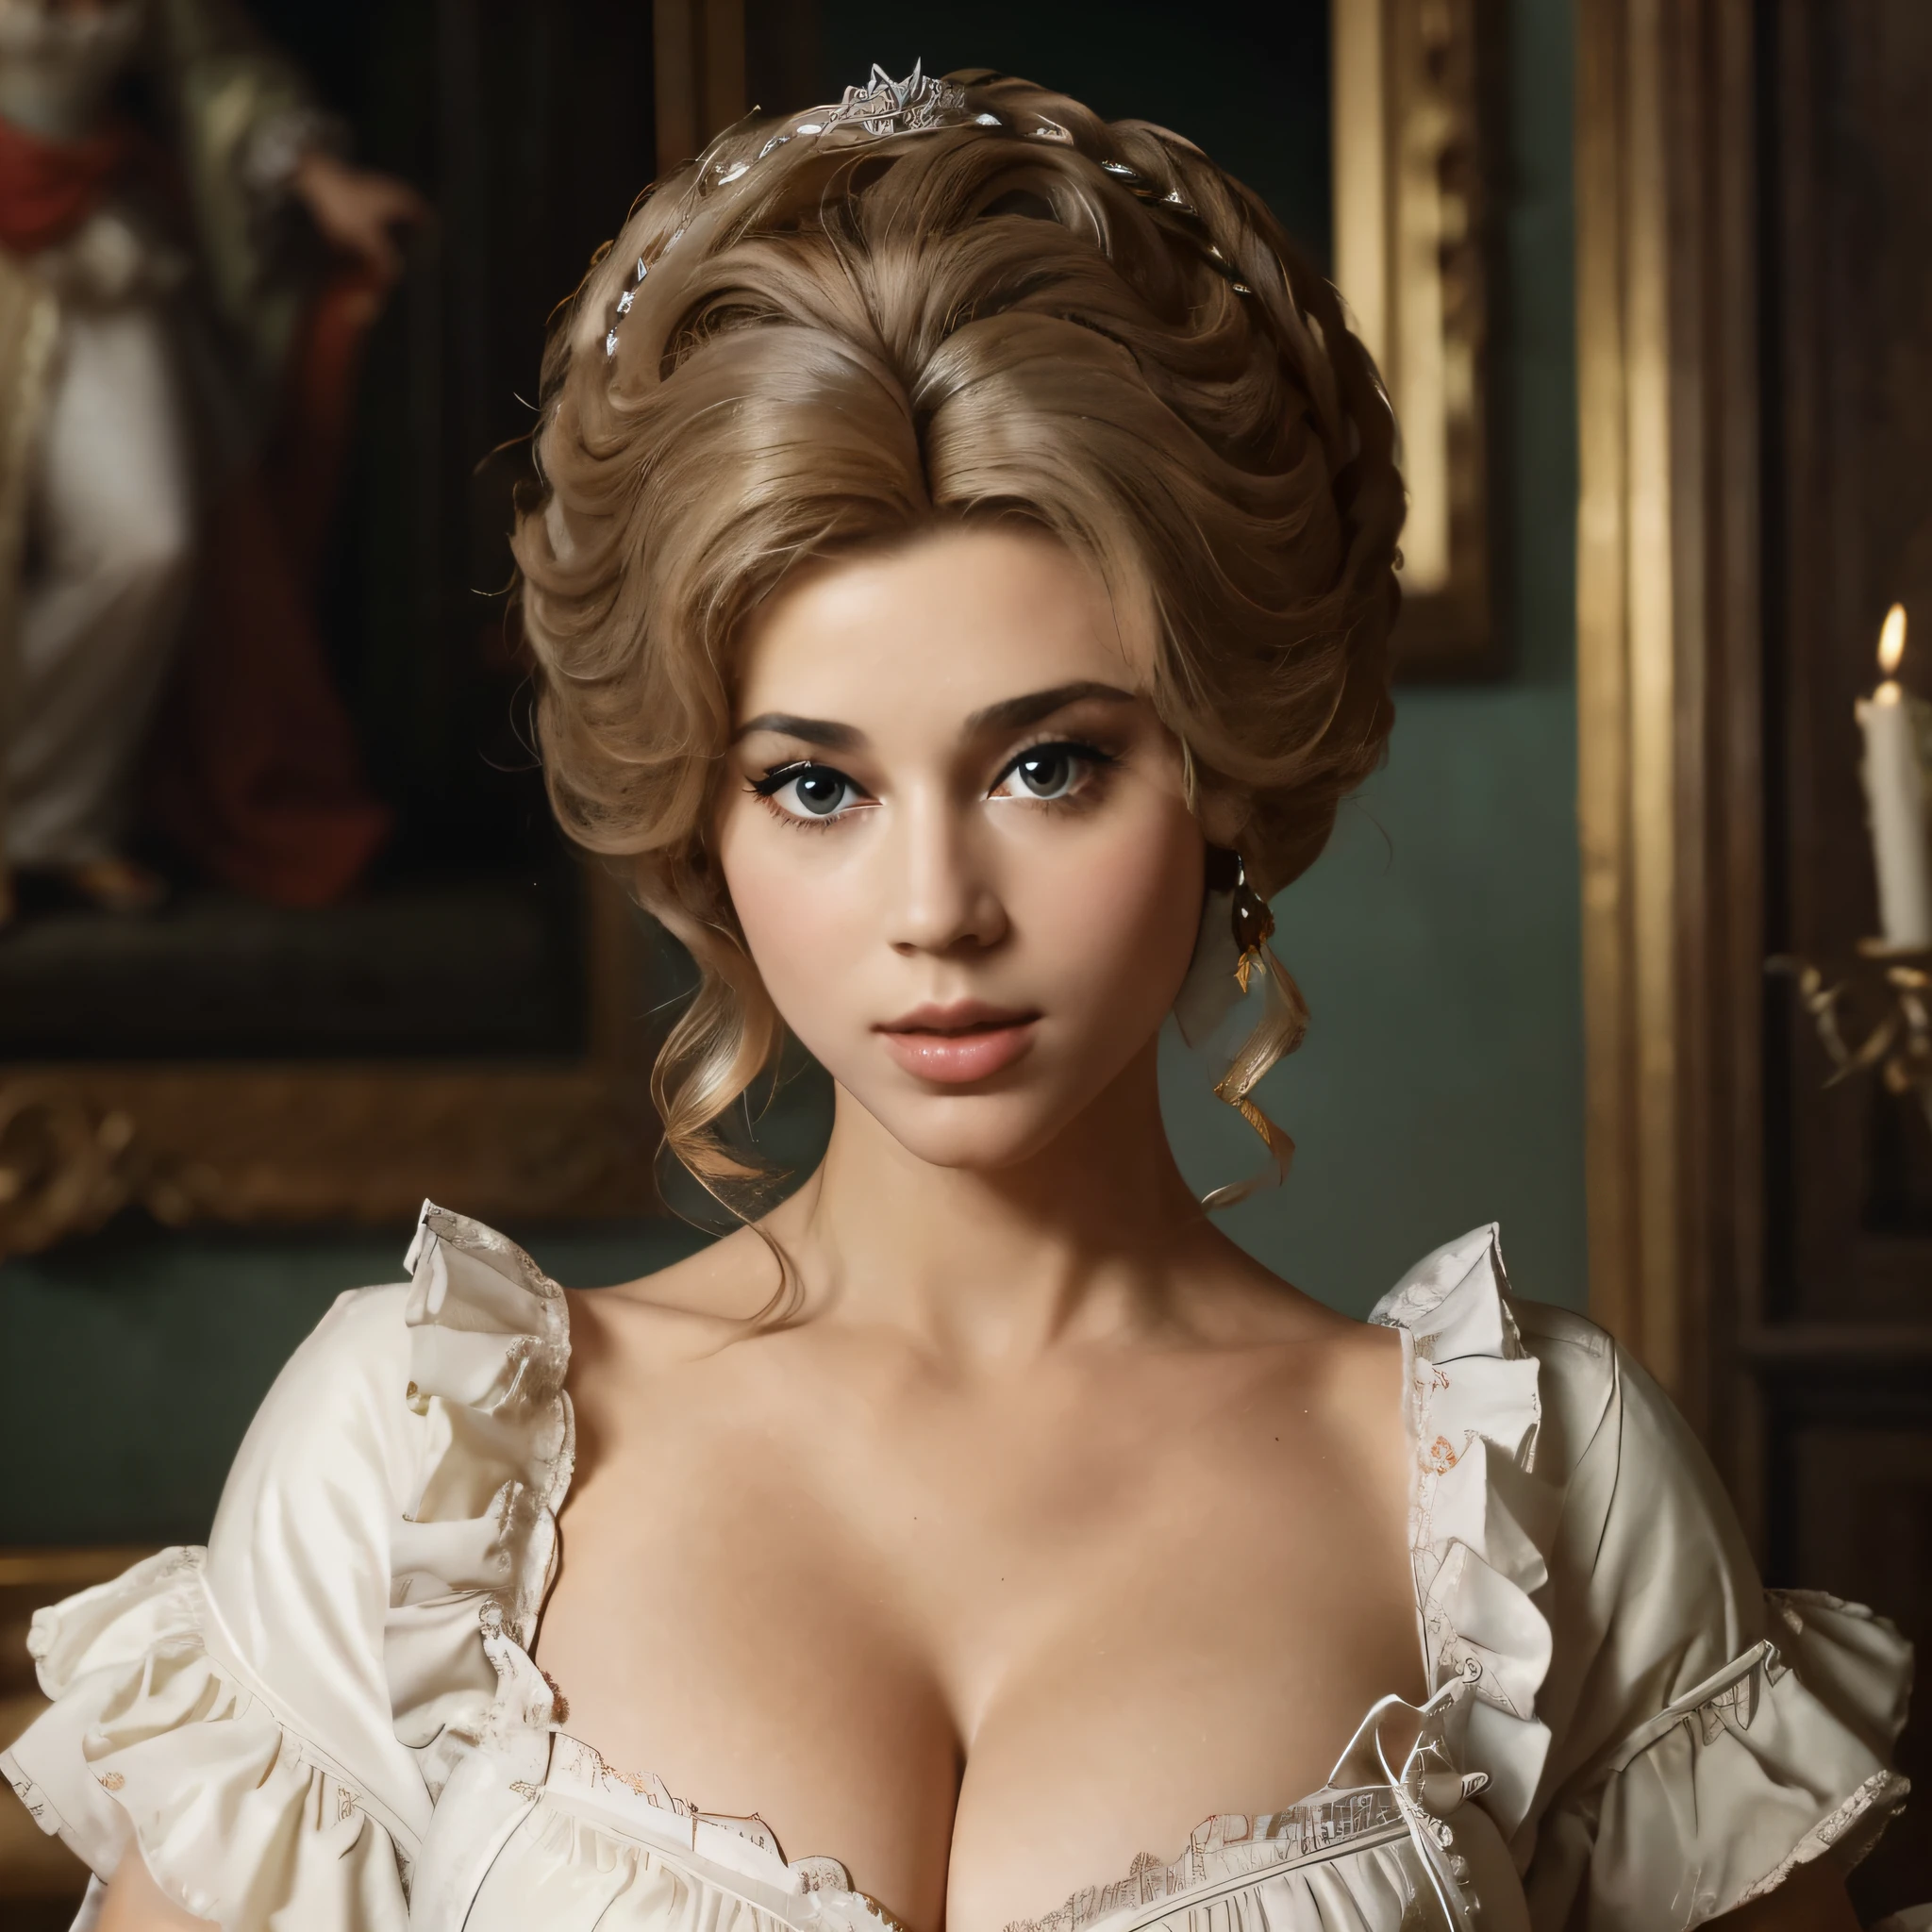 마스터피스, 매우 상세한, 8K, 복잡한 디테일, !(아름다운 여자는 흰색 드레스를 입고 팬 흰색 왕실 가발을 쓴 어린 제인 폰다처럼 보입니다. , 큰 가슴 분열, 앞모습 완전 완벽한 몸매,  마리 앙투아네트 18세기 스타일, 로코코 퀸 (Rococo Queen), Adélaïde Labille-Guiard에서 영감을 받은 작품, 로코코 스타일의 초상화, 로코코 미술 스타일, 애들레이드 라빌 - 길드, 로코코 초상화, 18세기 예술, 로코코 패션)